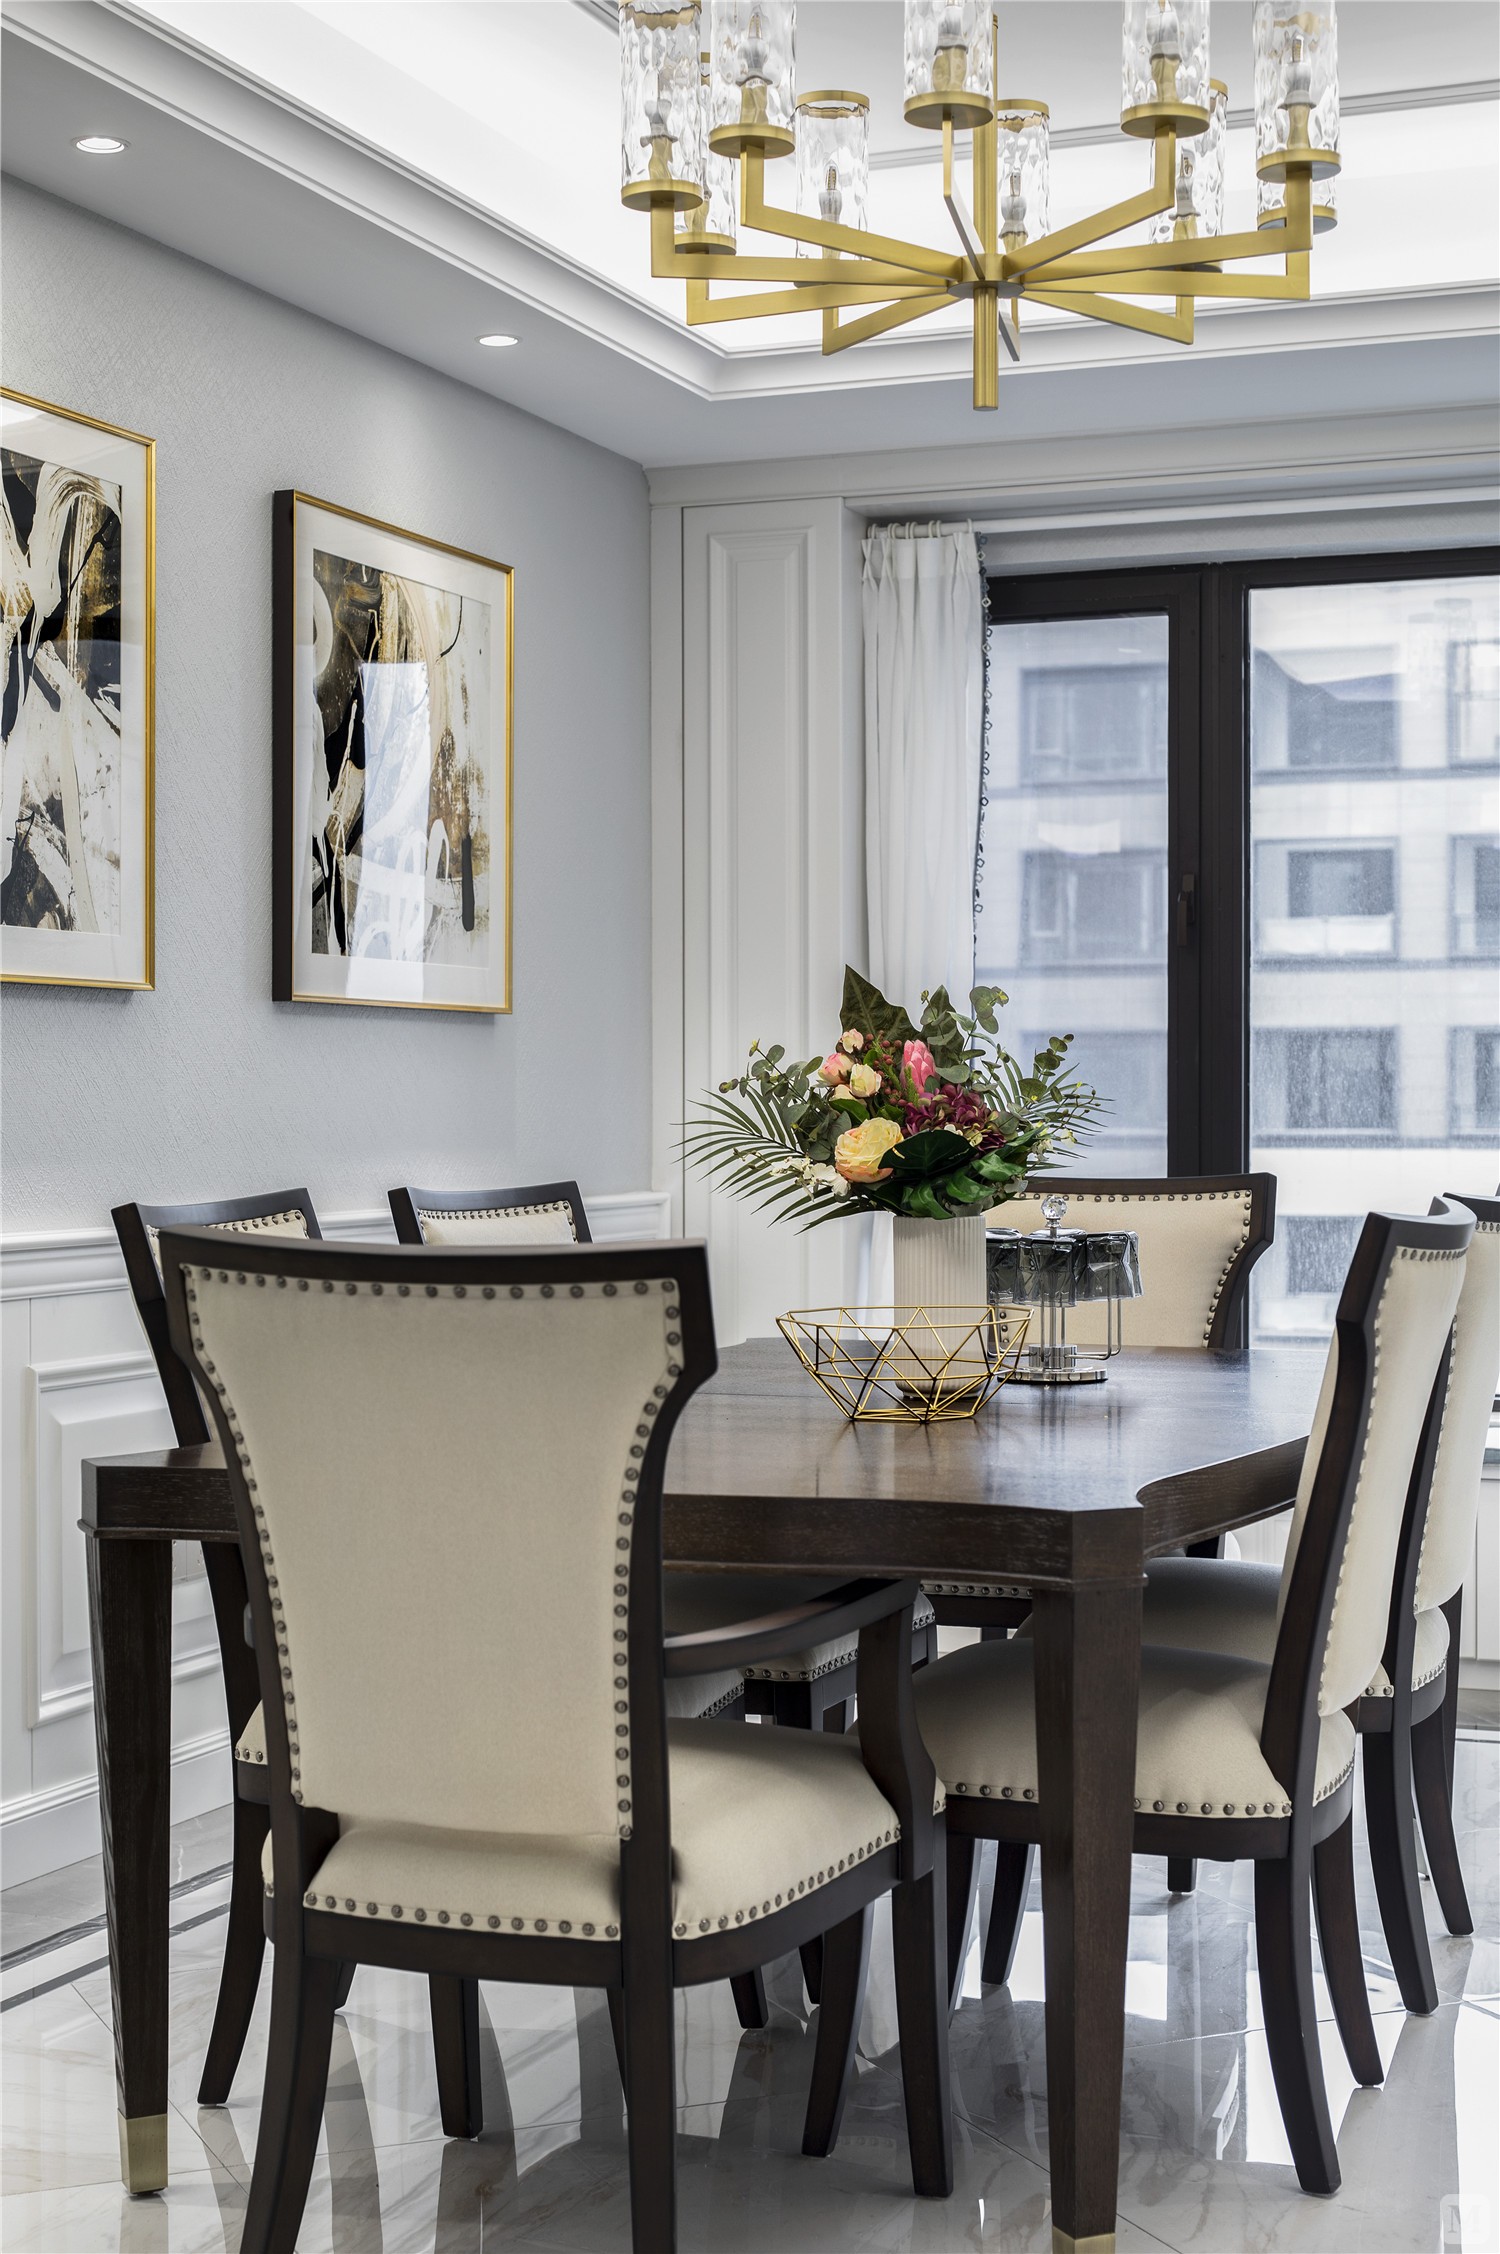 餐厅亚米色布艺餐椅和深木色的餐桌让人感觉温馨而舒适,整洁的立面